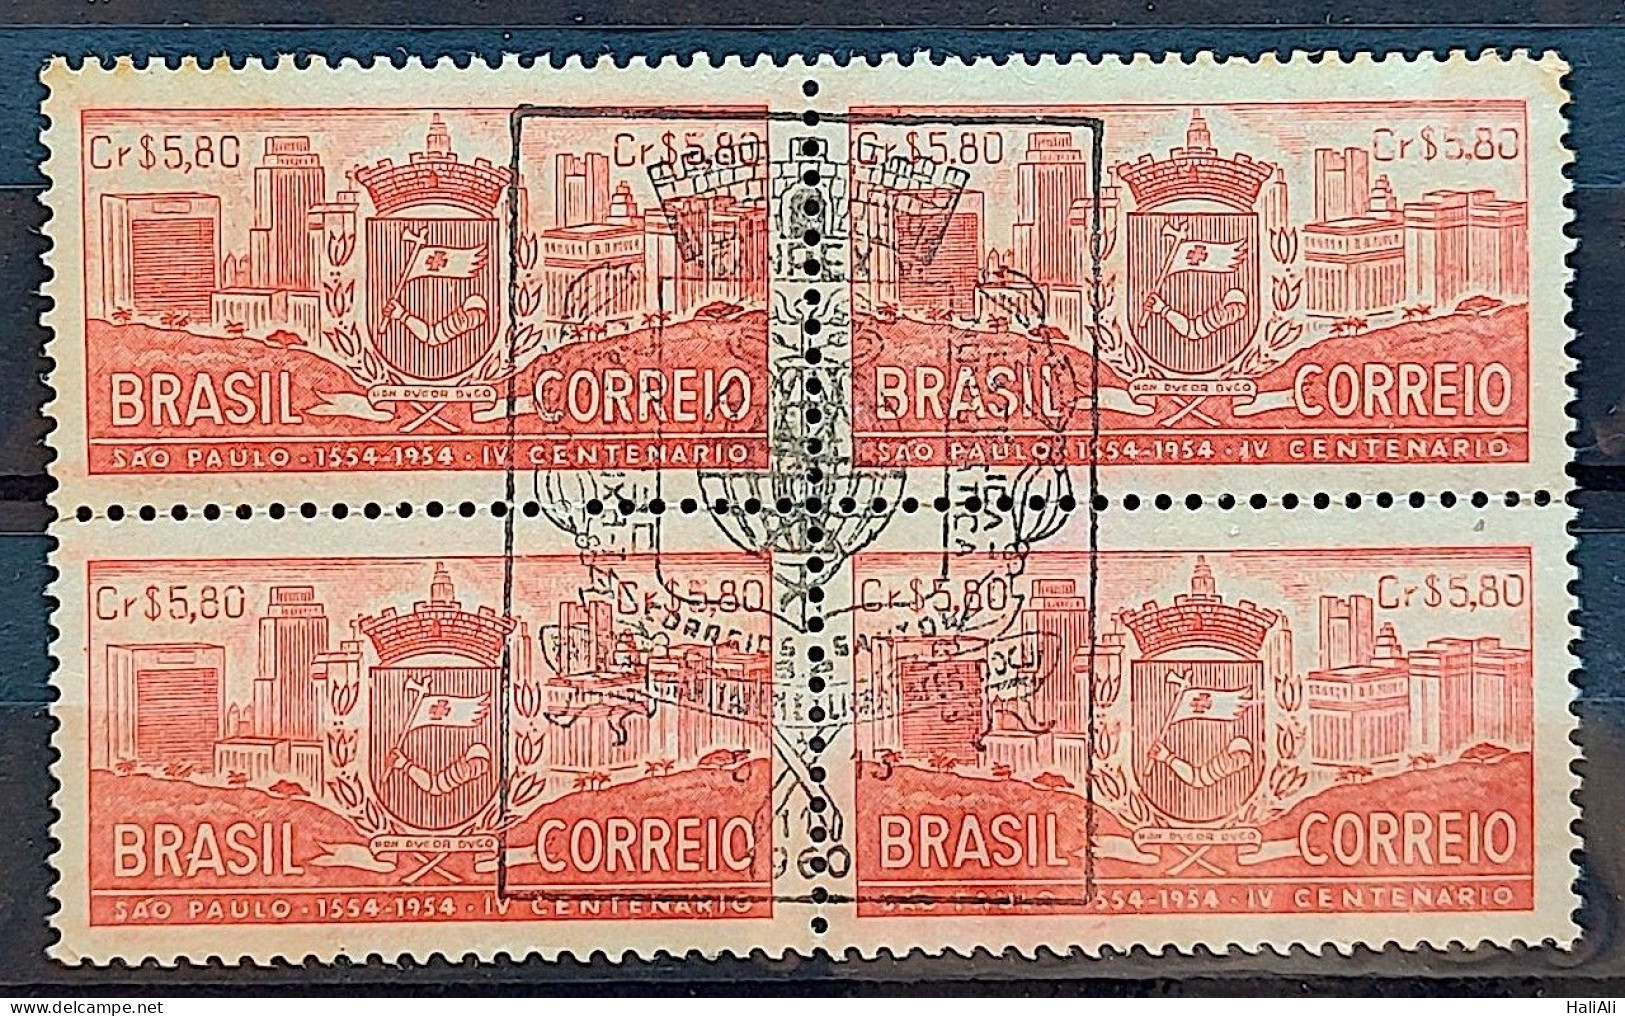 C 332 Brazil Stamp 4 Centenary Of Sao Paulo 1954 Block Of 4 CBC SP - Ongebruikt